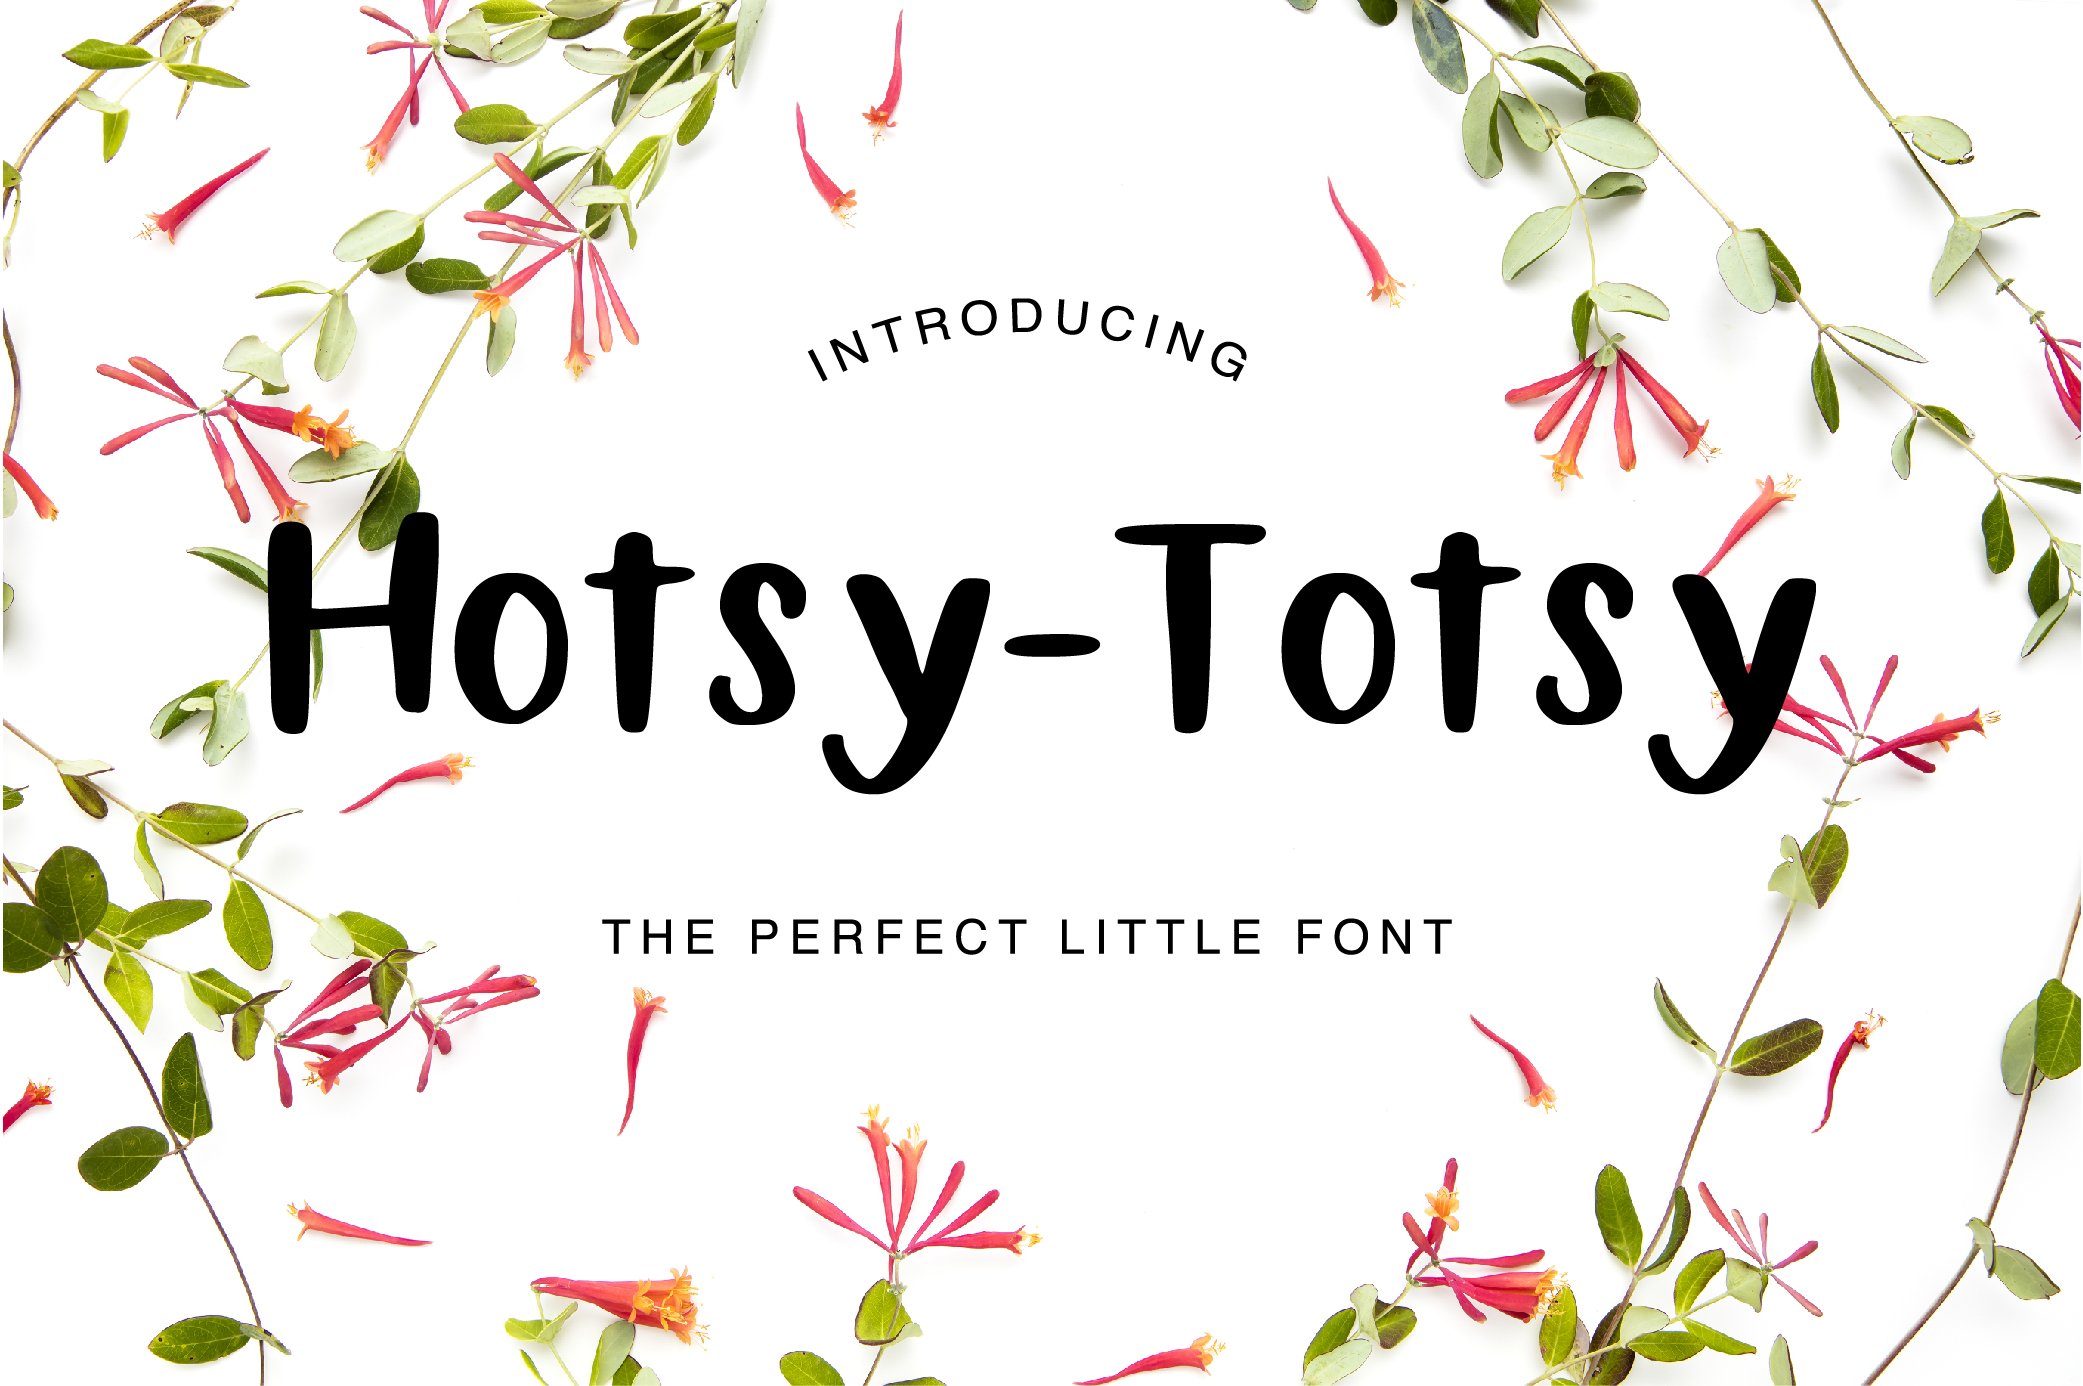 Hotsy Totsy Font cover image.